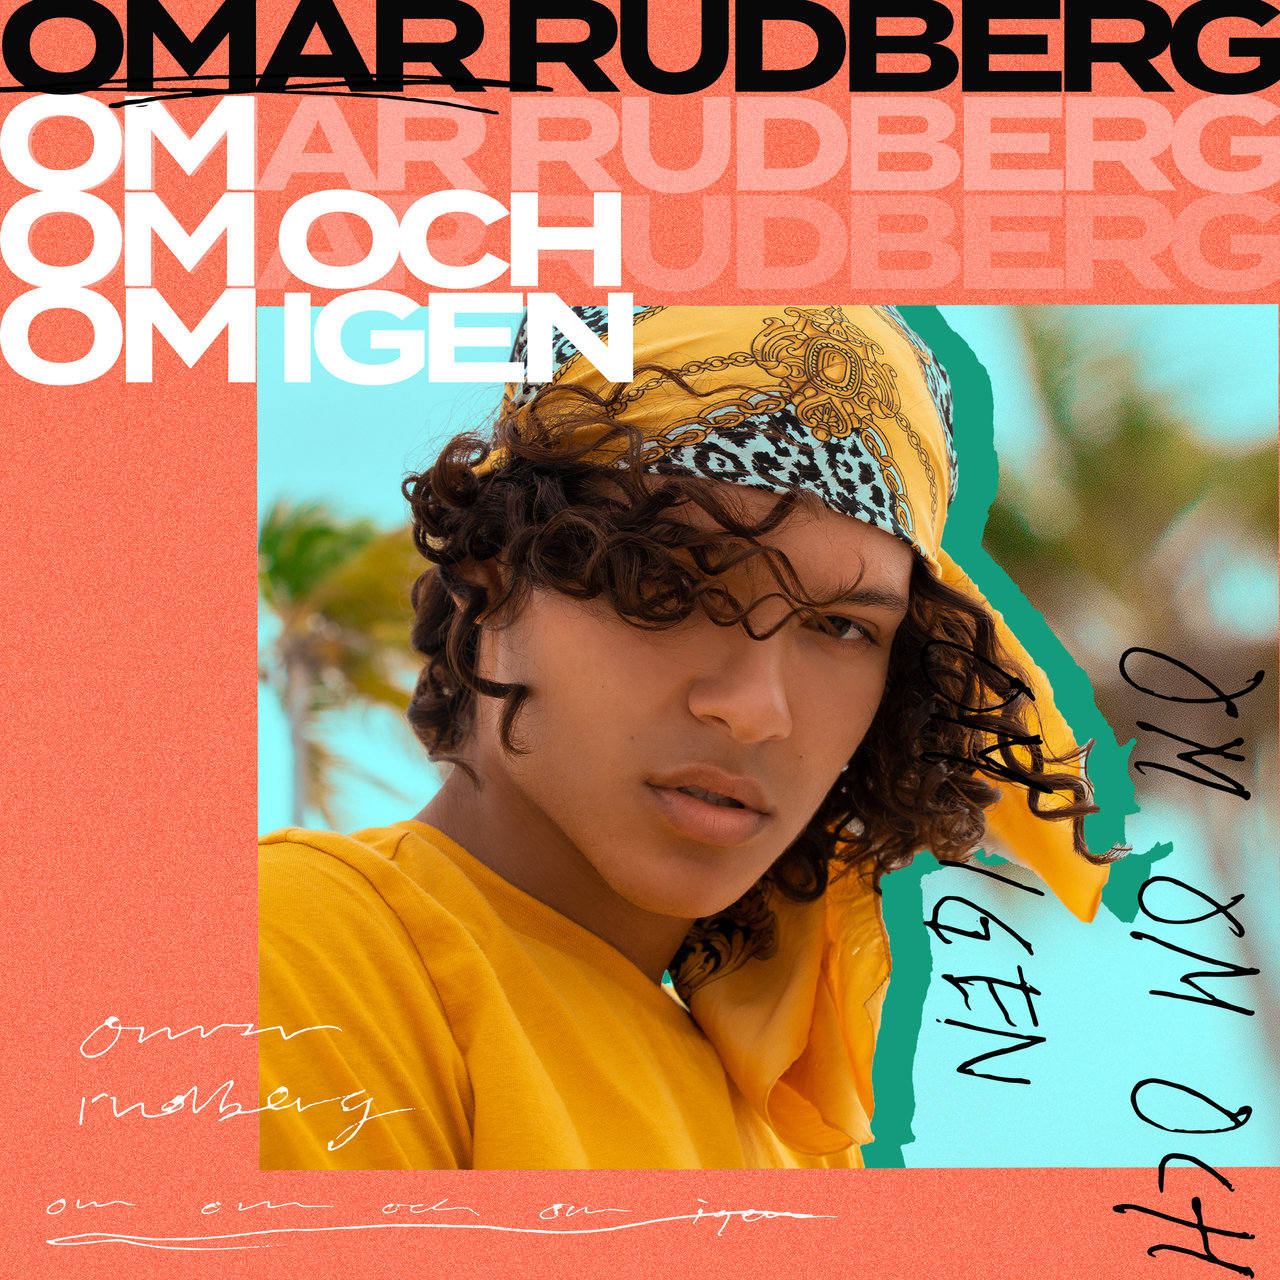 Omar Rudberg Om om och om igen cover artwork